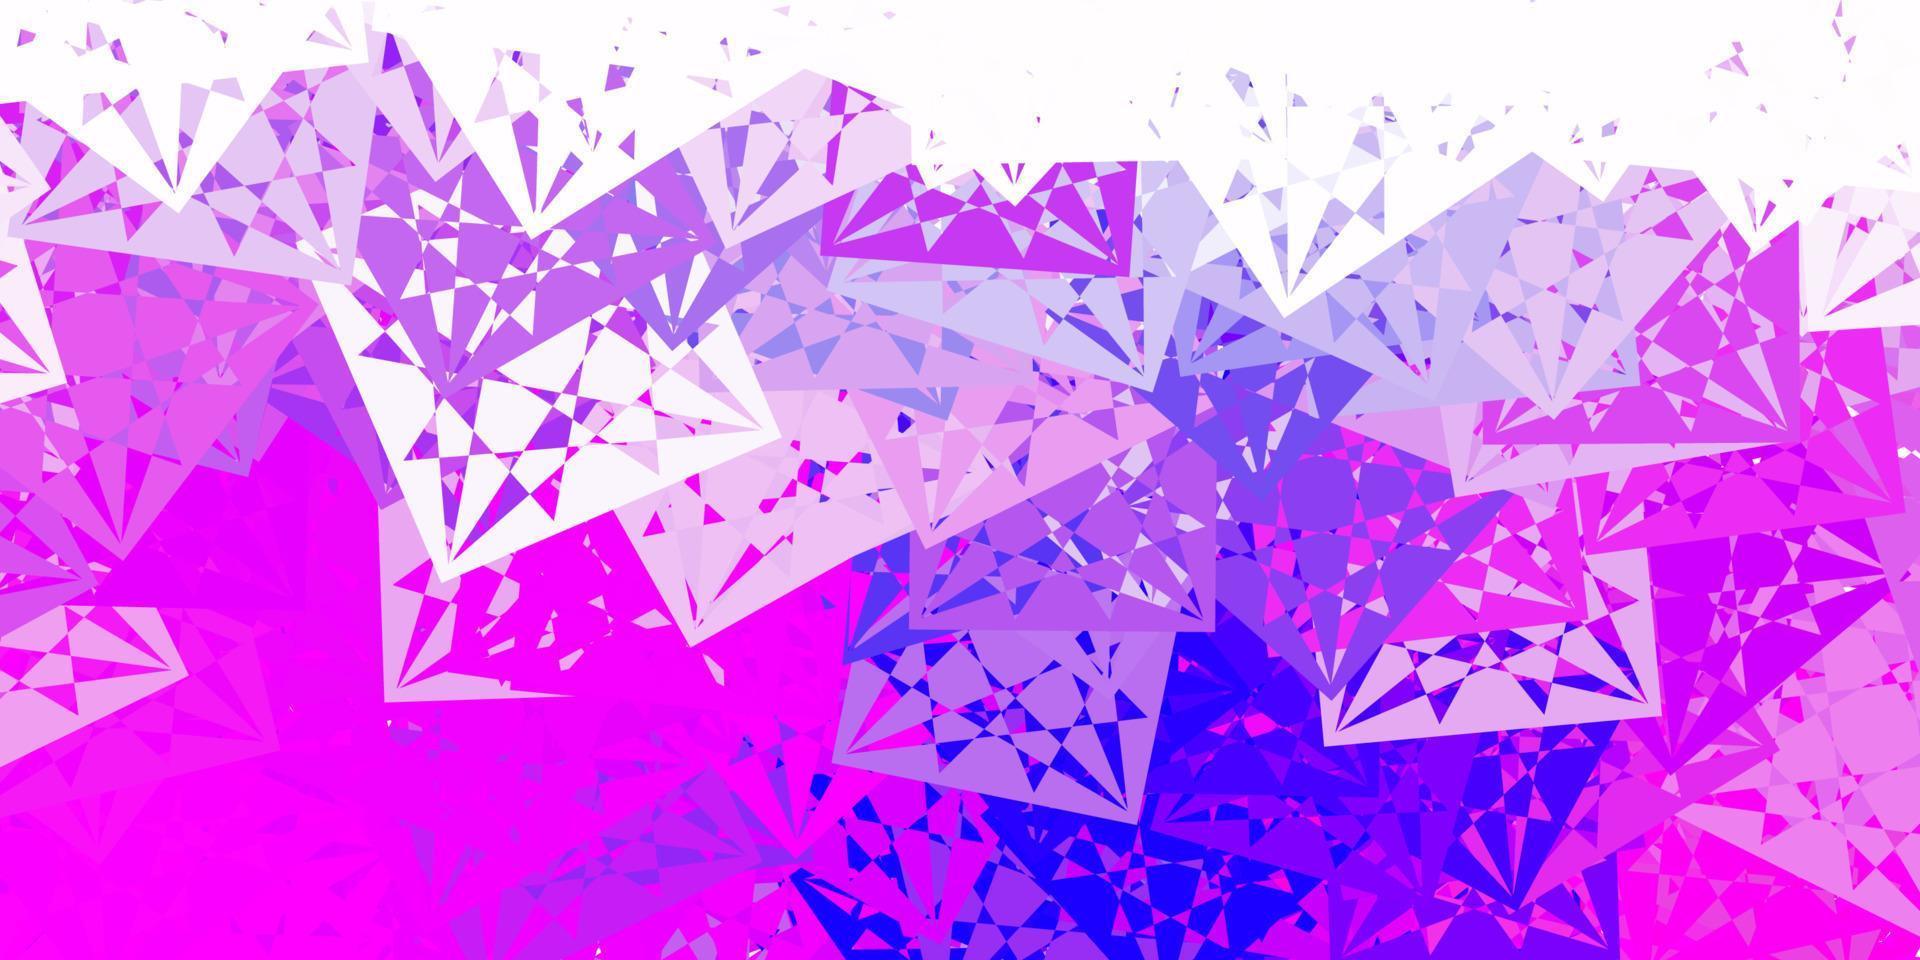 modello vettoriale viola chiaro, rosa con forme poligonali.